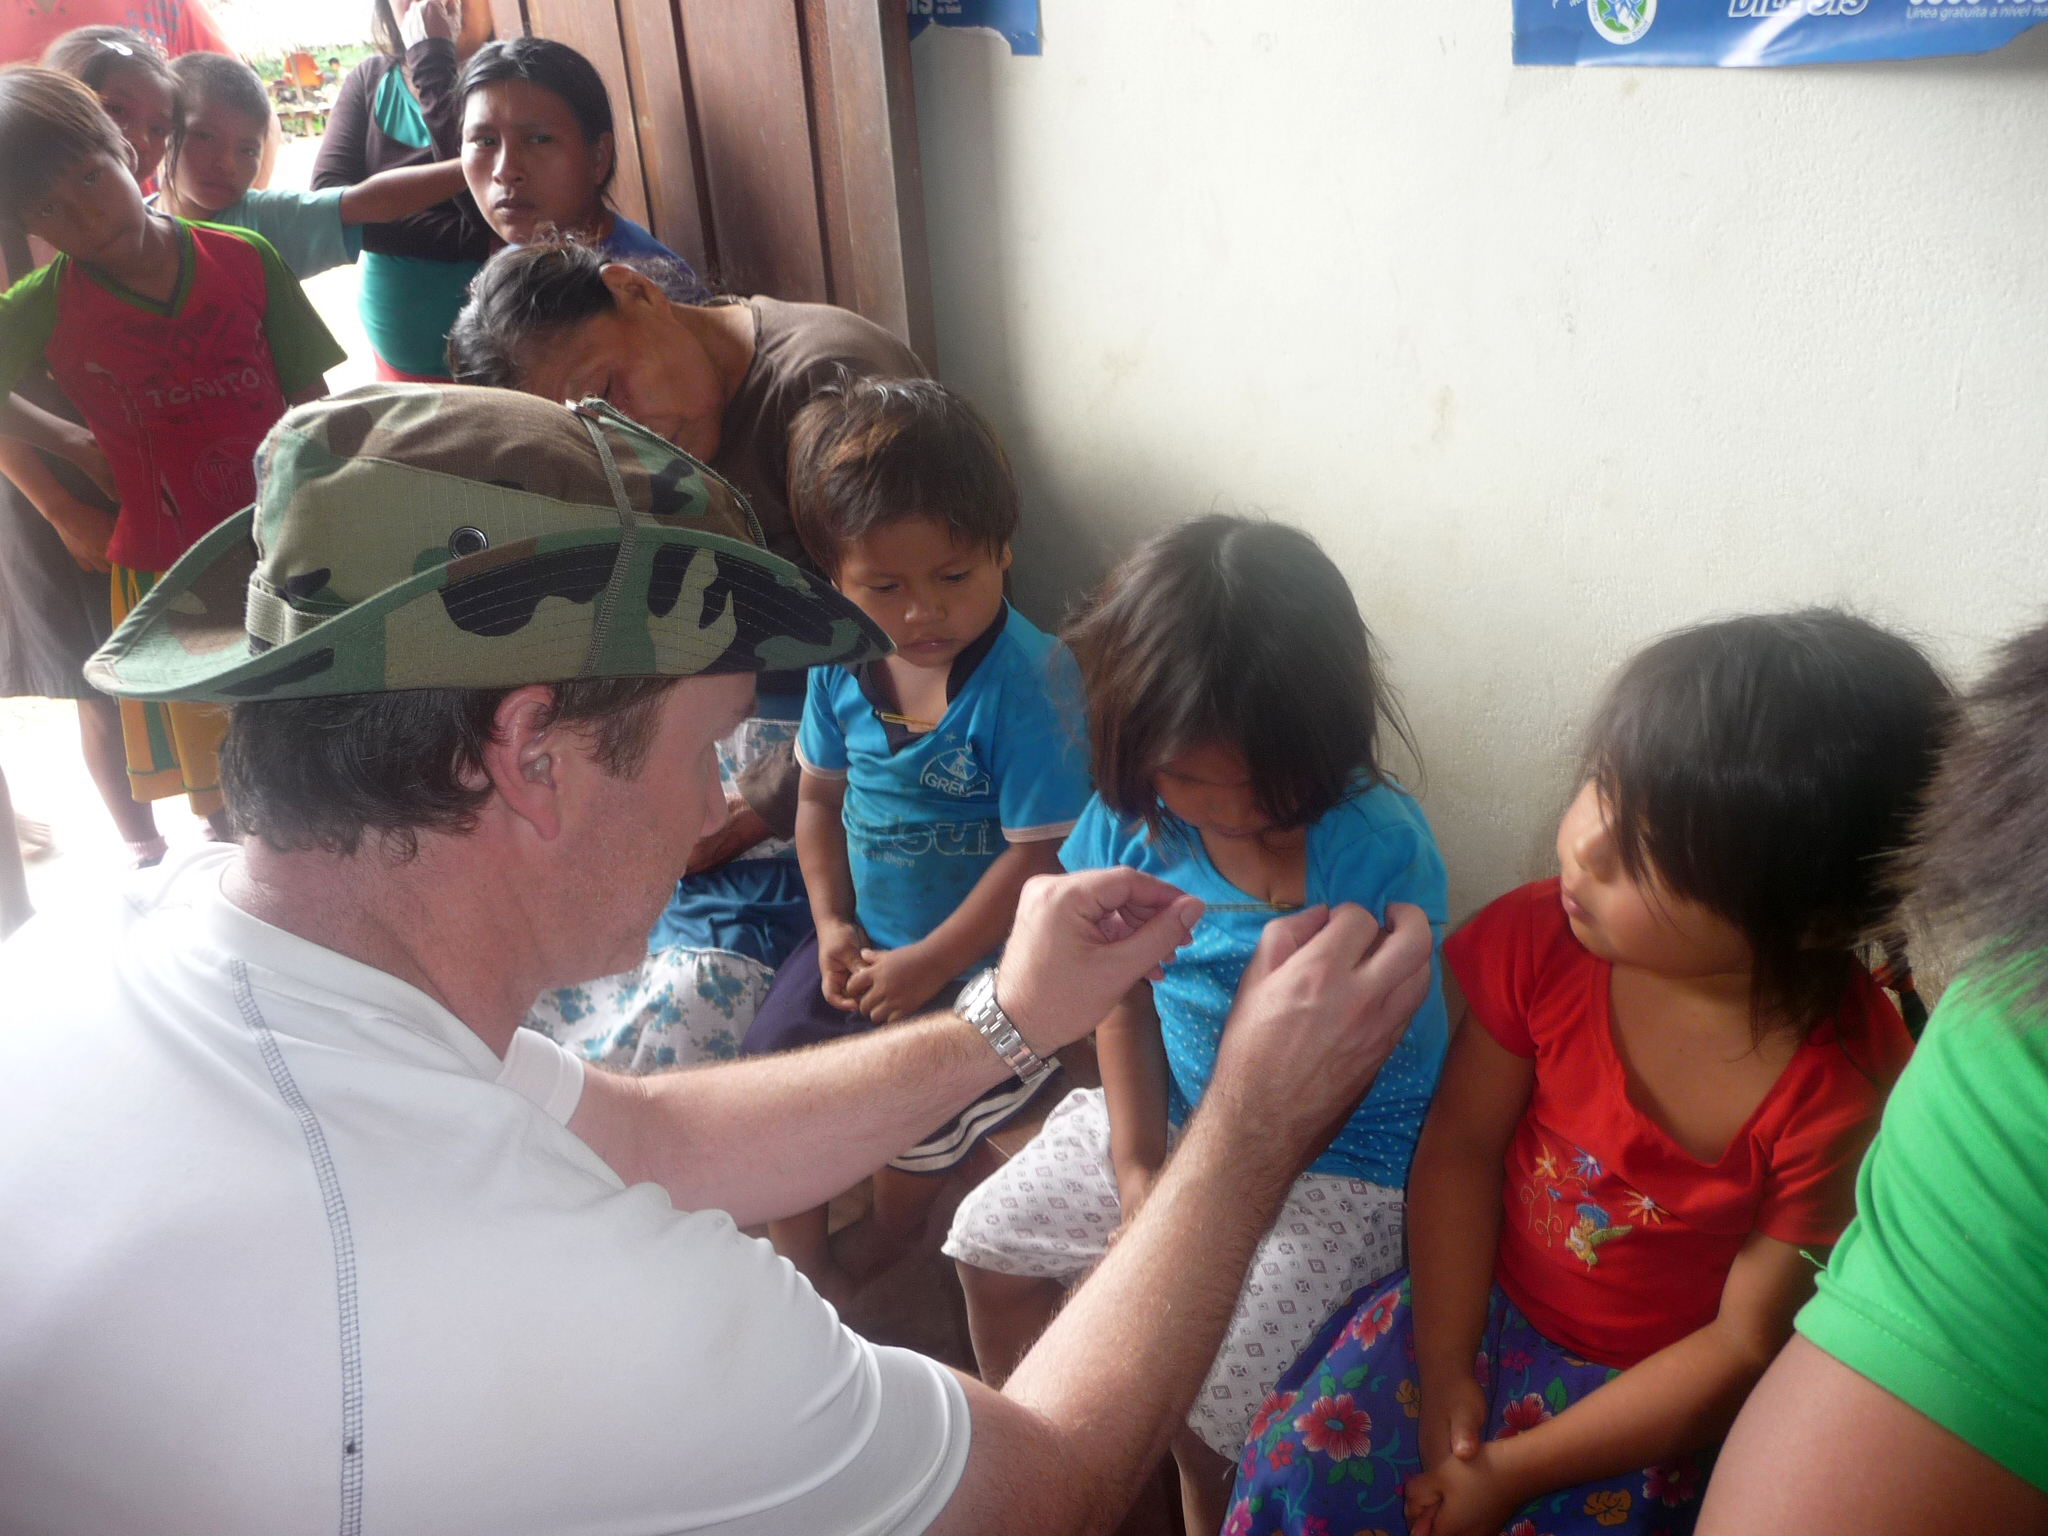 UJMT Trainee Michael Deshotel working with children in Peru